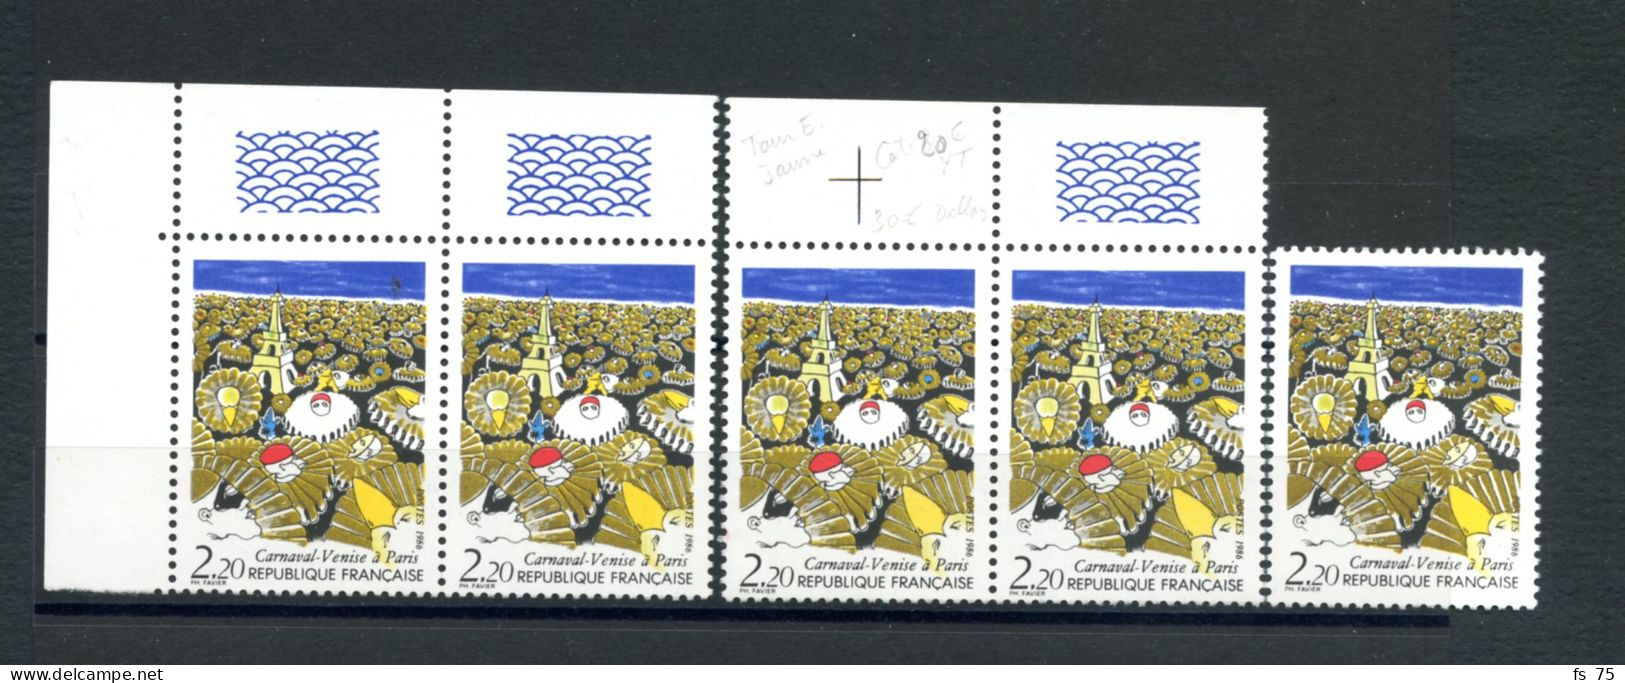 FRANCE - N°2395 2F20 CARNAVAL DE VENISE VARIETE TOUR EIFFEL JAUNE AU LIEU DE VERTE - 5 EXEMPLAIRES SANS CHARNIERE ** - Unused Stamps